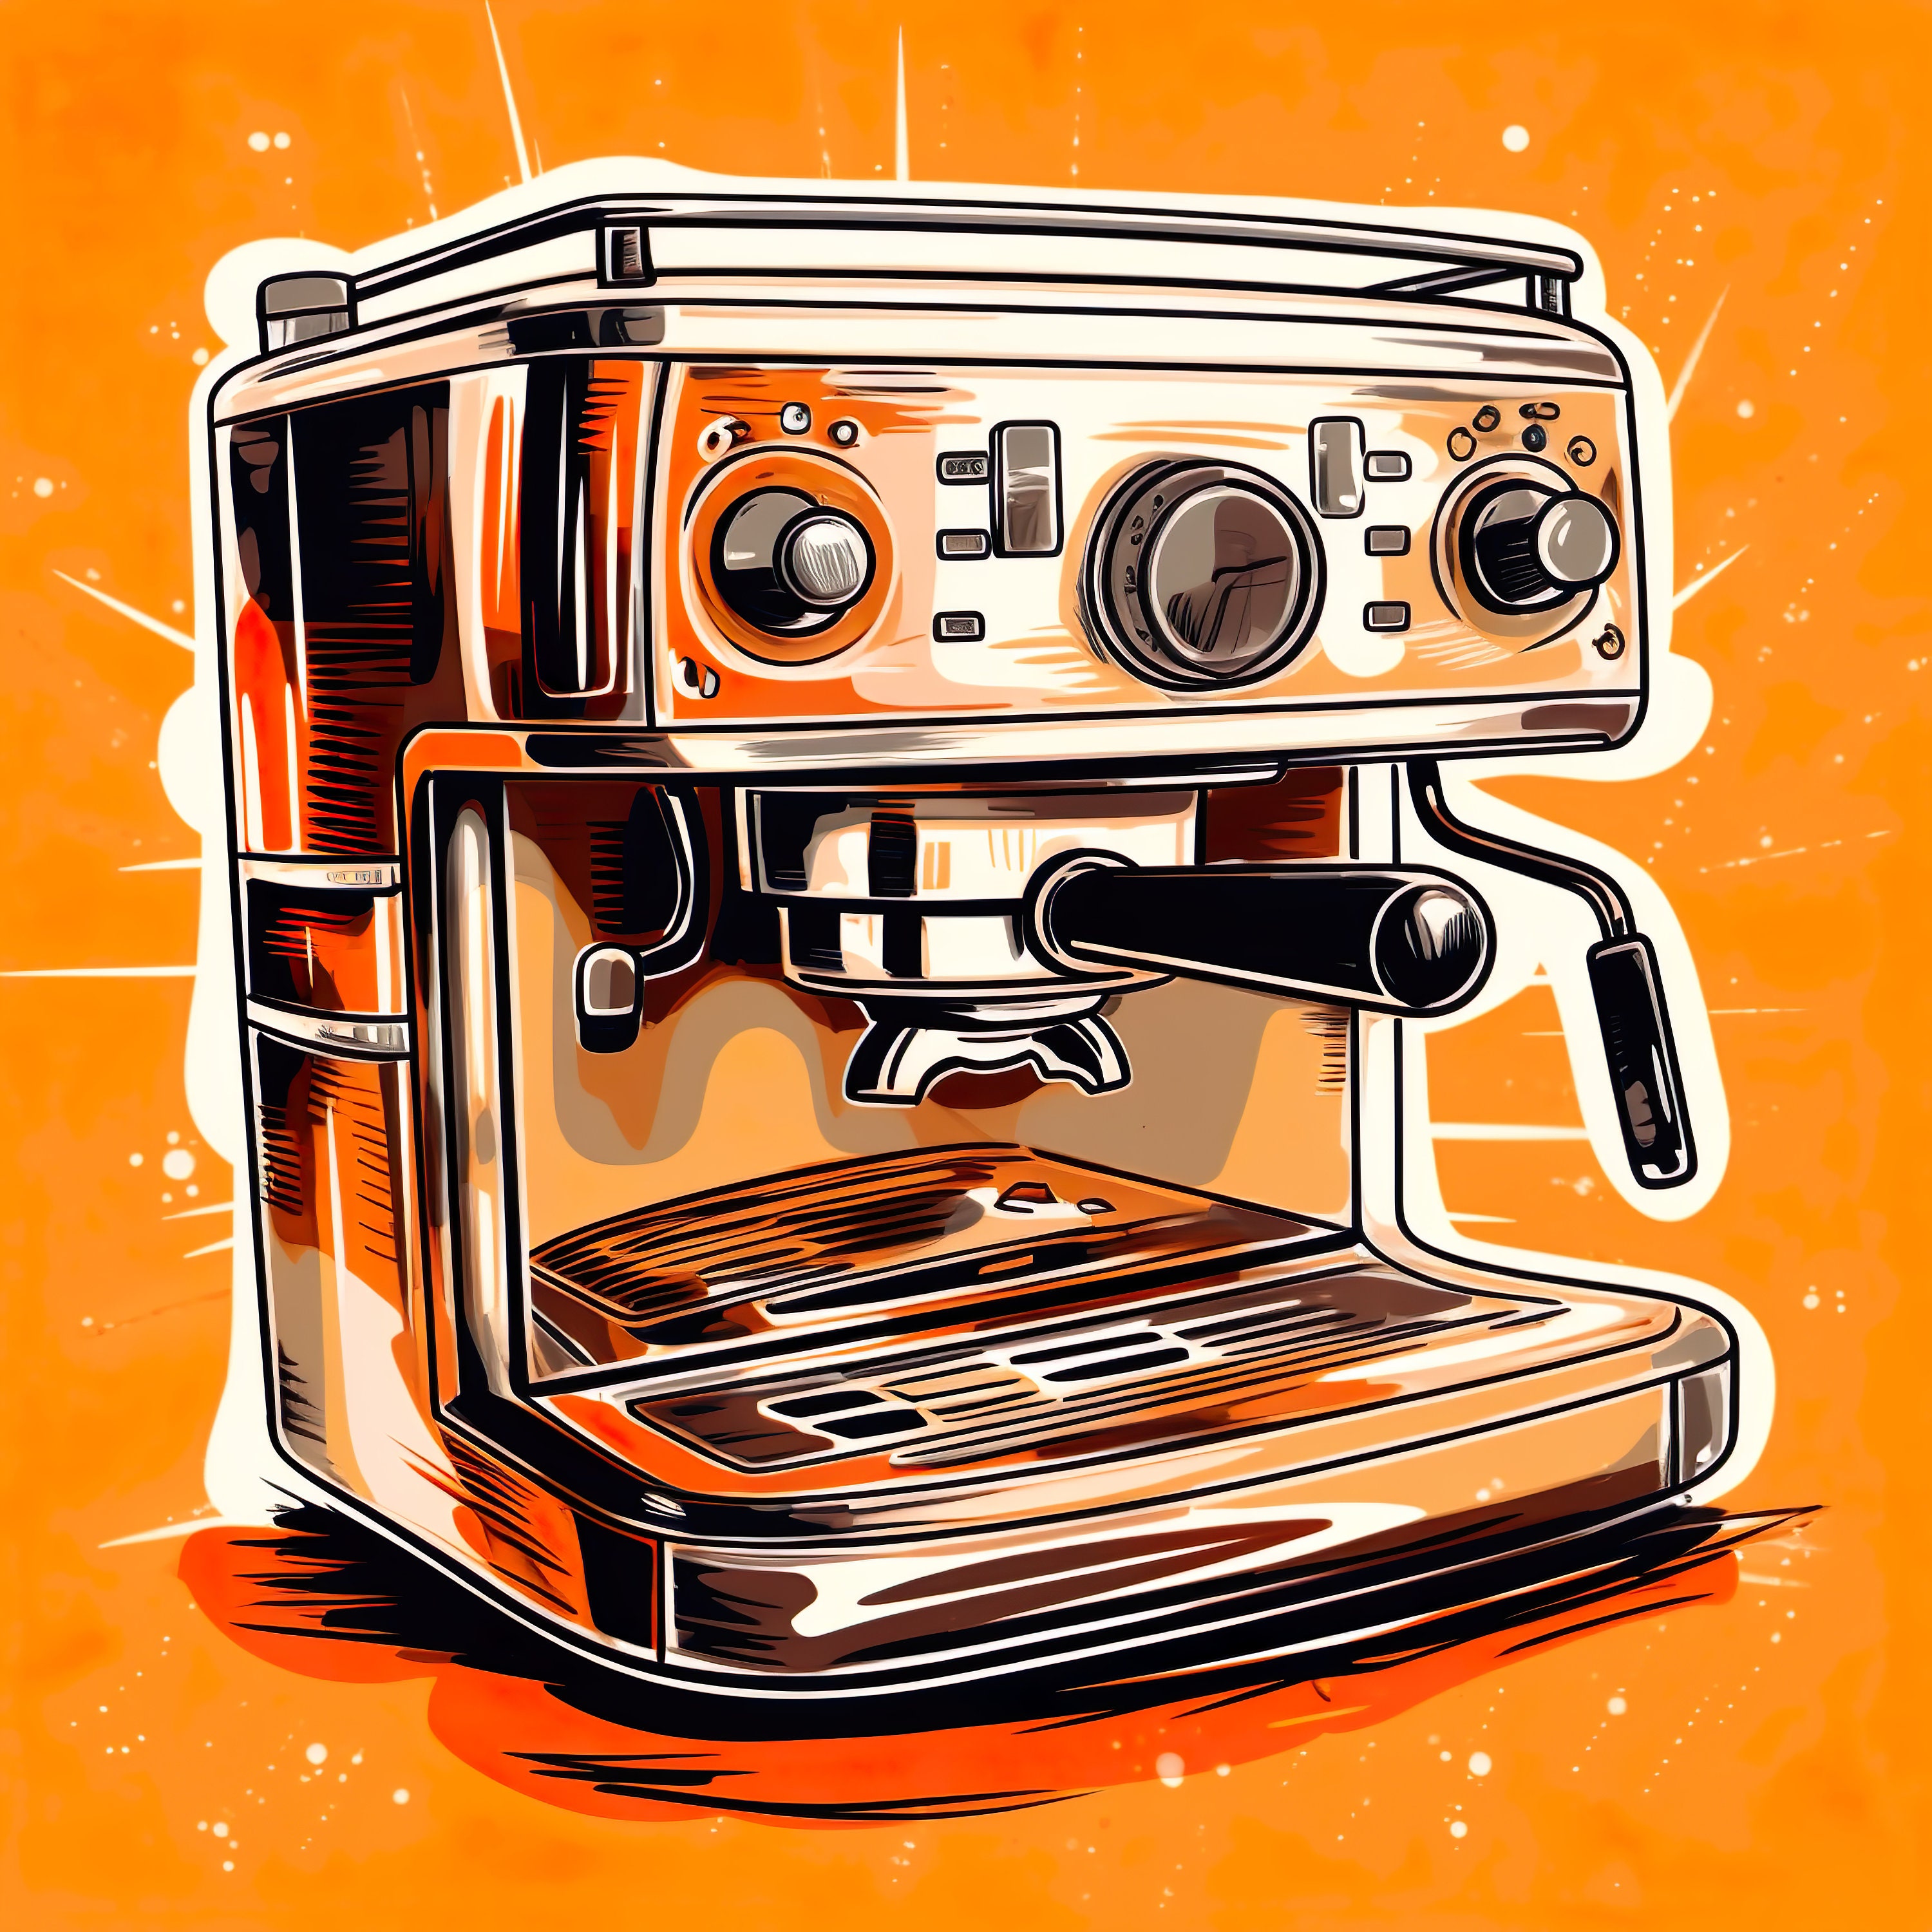 Vintage coffee machines